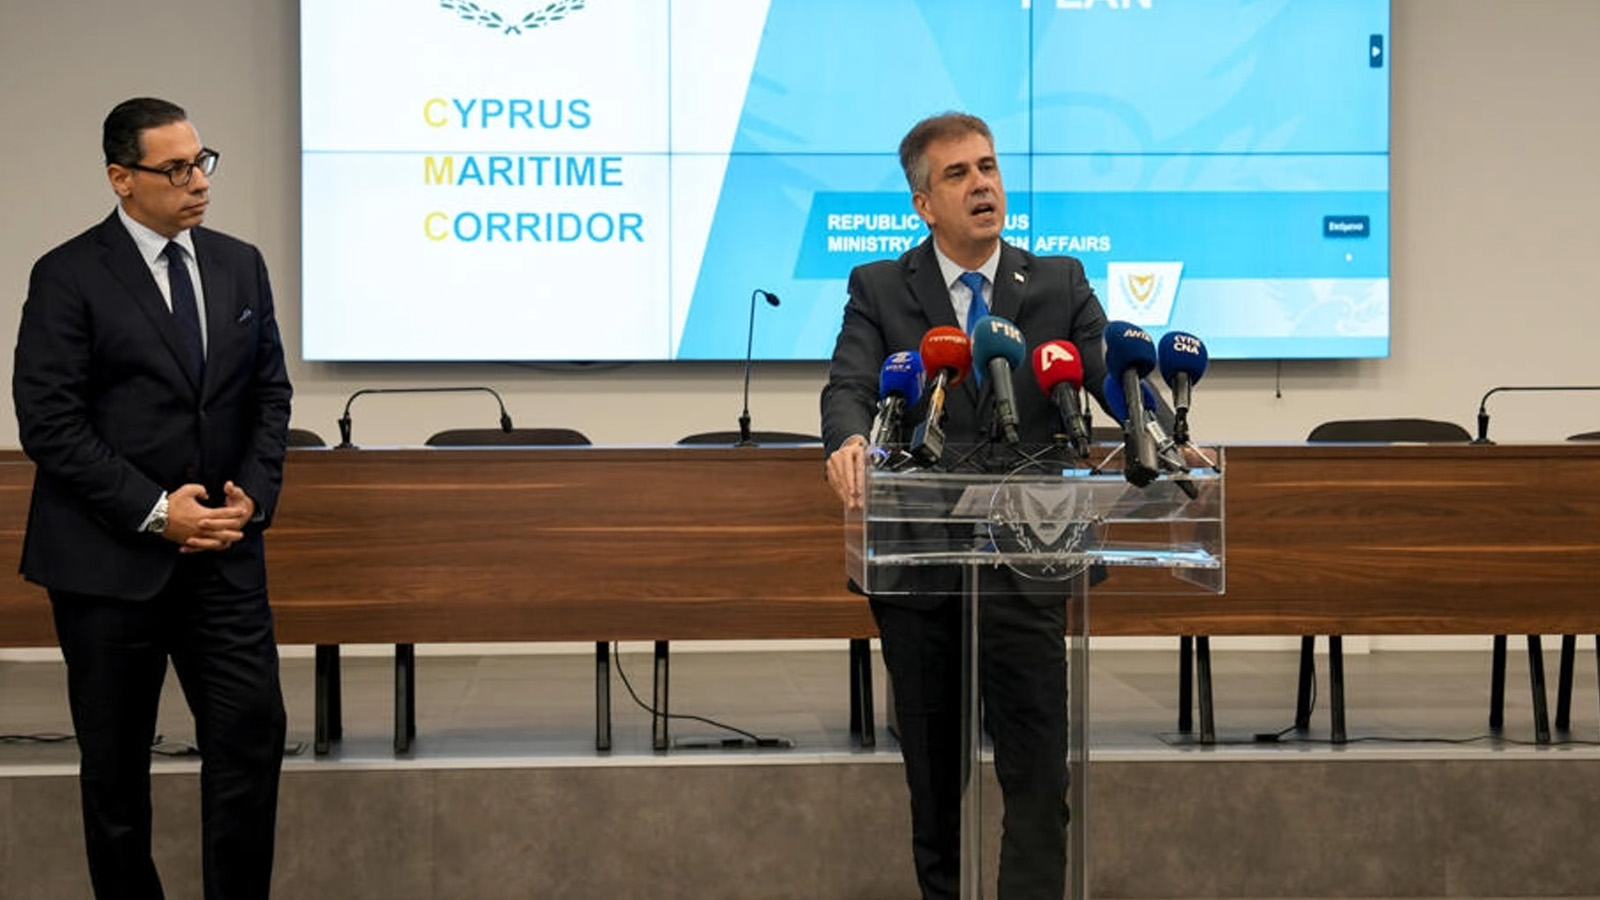 وزير الخارجية الإسرائيلي إيلي كوهين يبحث مع نظيره القبرصي كونستانتينوس كومبوس، التفاصيل اللوجستية حول خطة قبرصية لإنشاء ممرّ بحري لإيصال مساعدات إلى قطاع غزة المحاصر